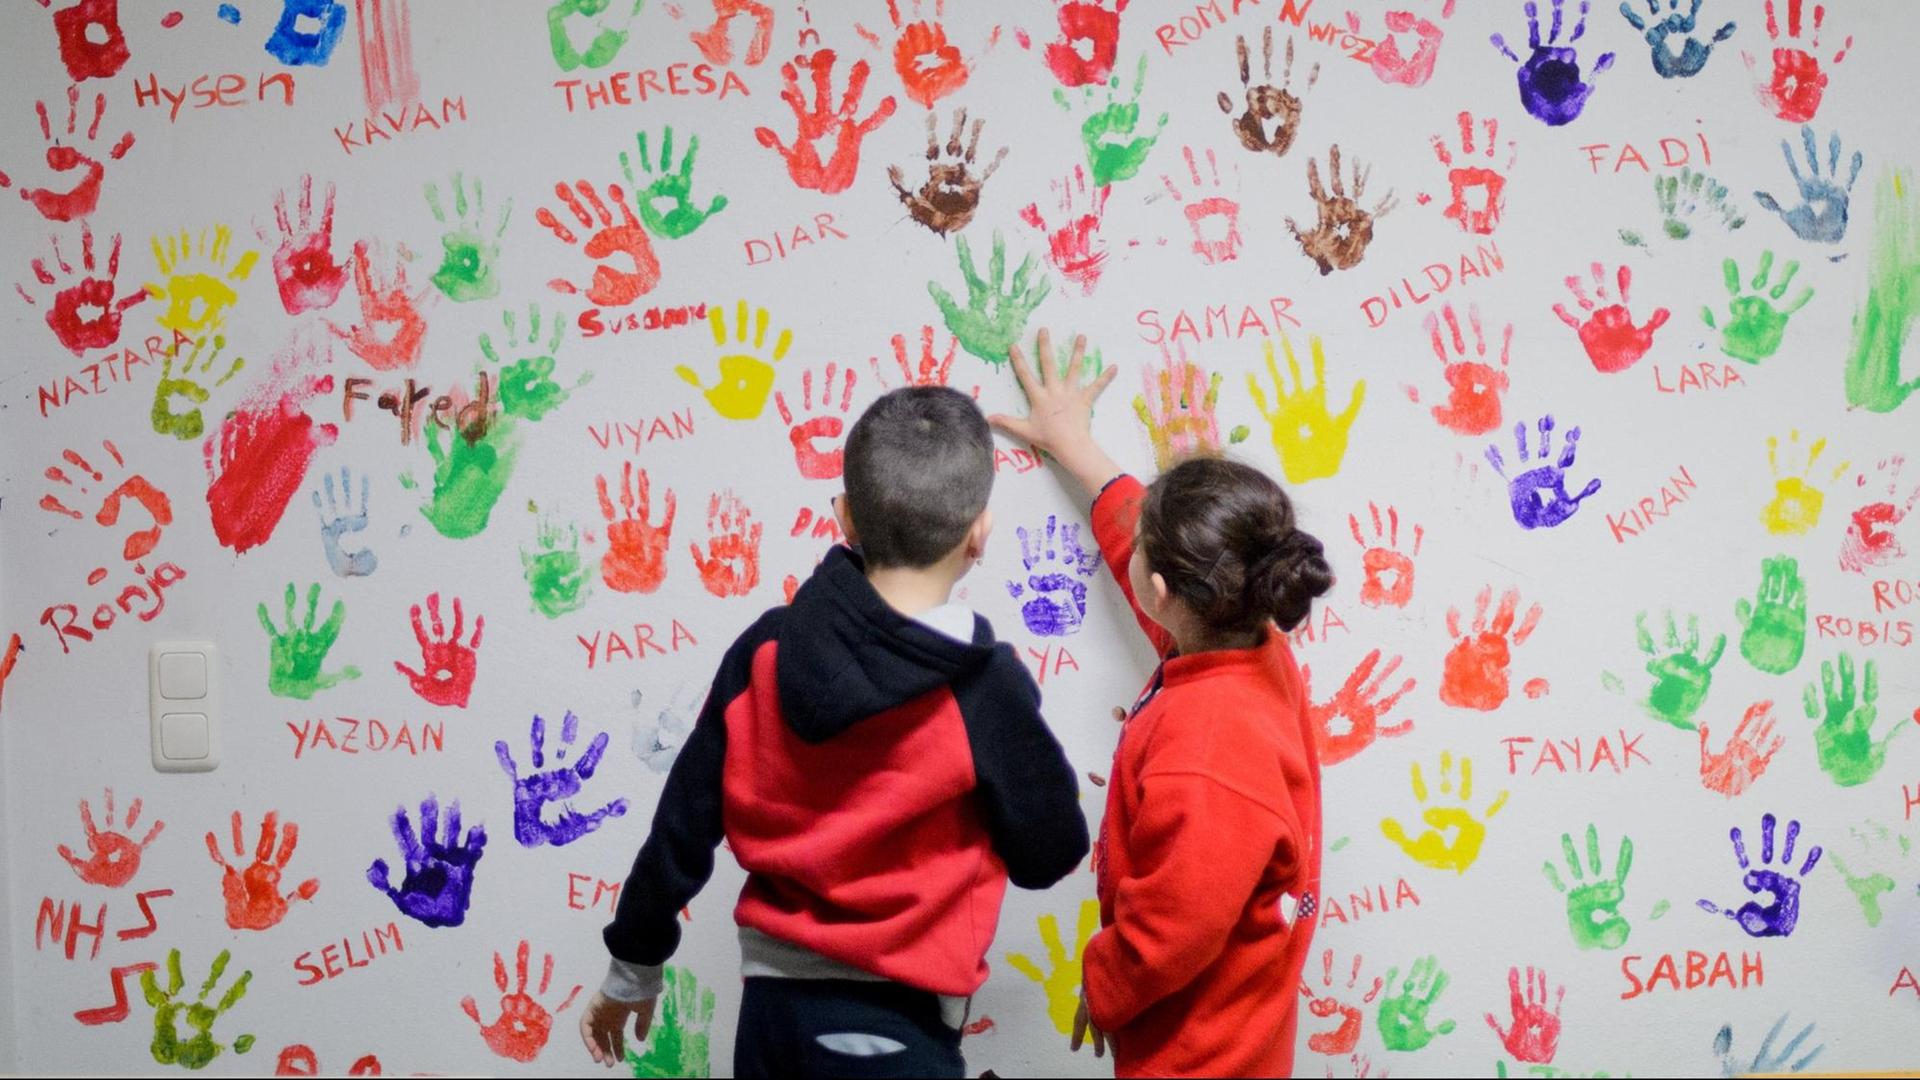 Zwei Flüchtlingskinder in einer Erstaufnahmeeinrichtung für Flüchtlinge in Hameln vor einer Wand, auf der sich junge Flüchtlinge aus der ganzen Welt mit bunten Handabdrücken verewigt haben.